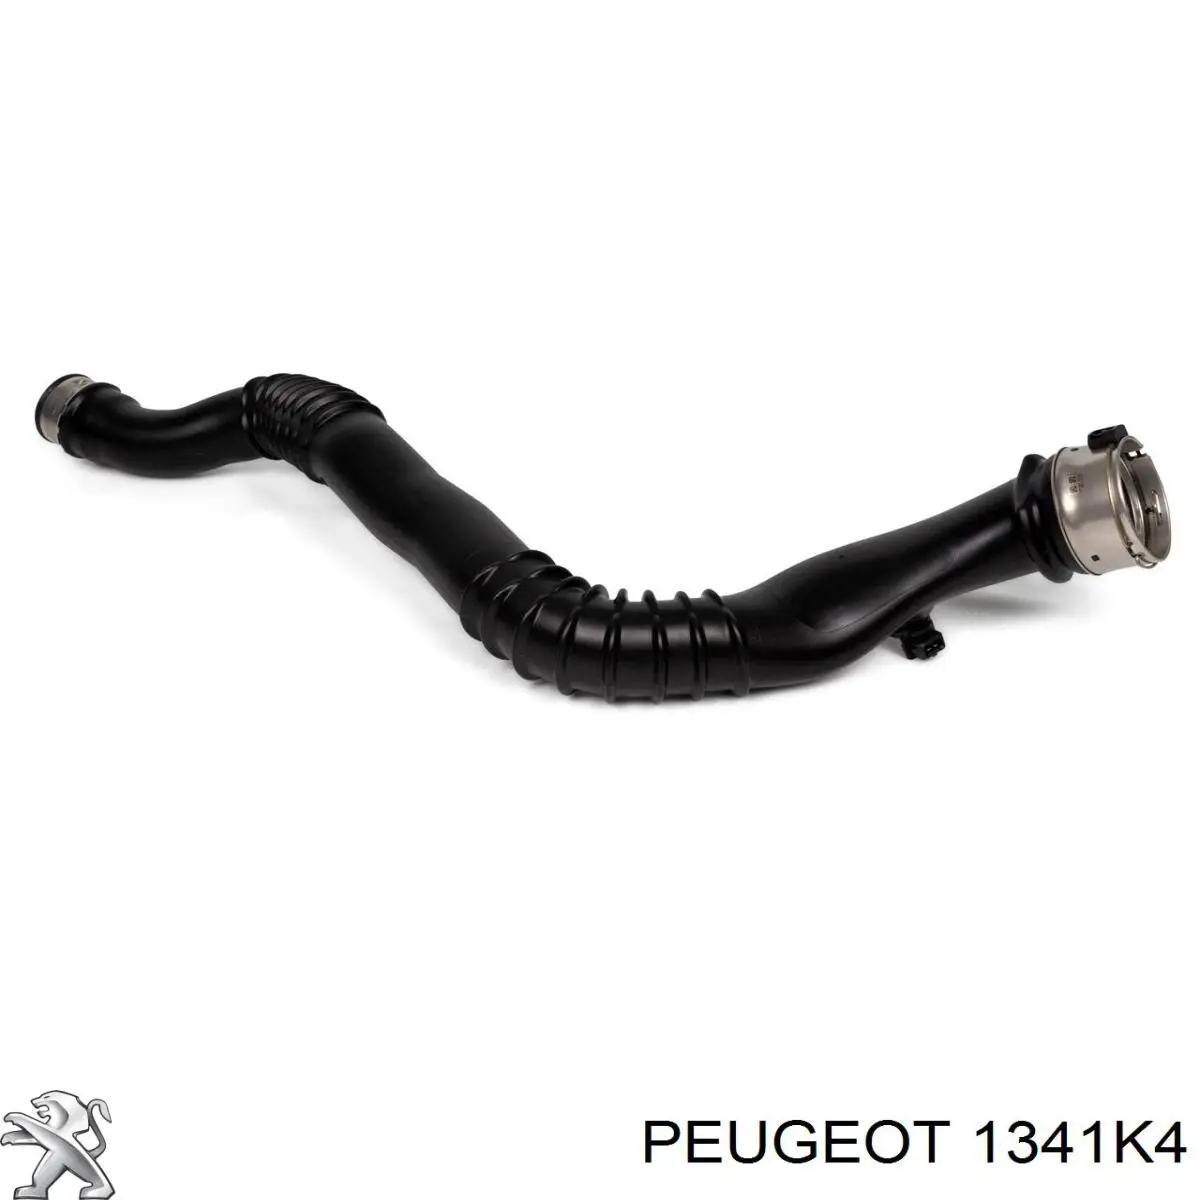 1341K4 Peugeot/Citroen шланг (патрубок жидкостного охлаждения турбины, подача)